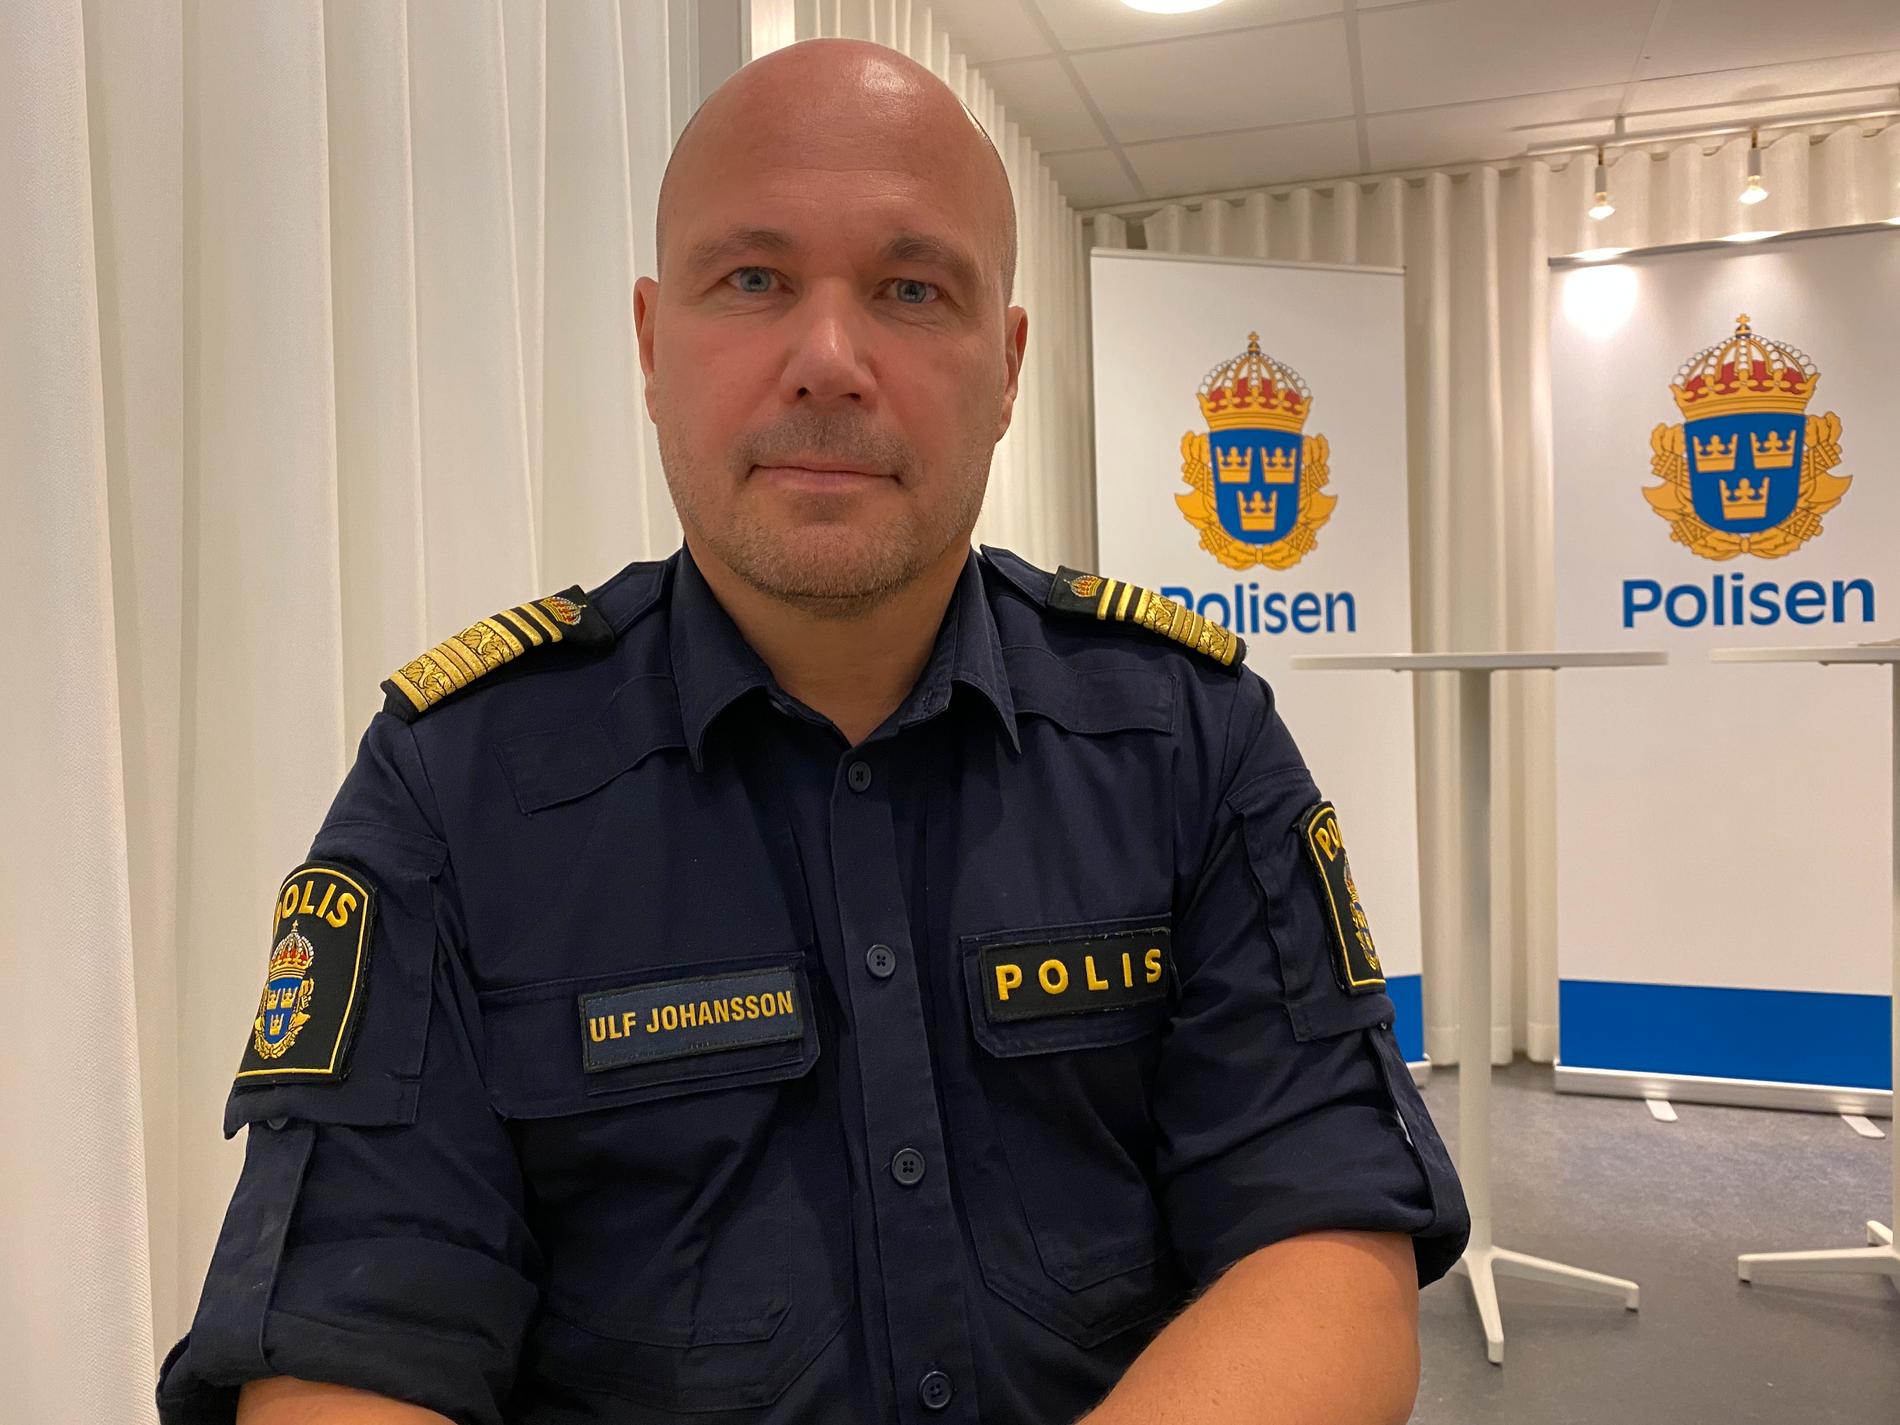 ”Vi i vet att polistäthet är en viktig faktor. Det såg vi inte minst under operation Rimfrost i både Uppsala och Malmö”, säger regionchefen Ulf Johansson.